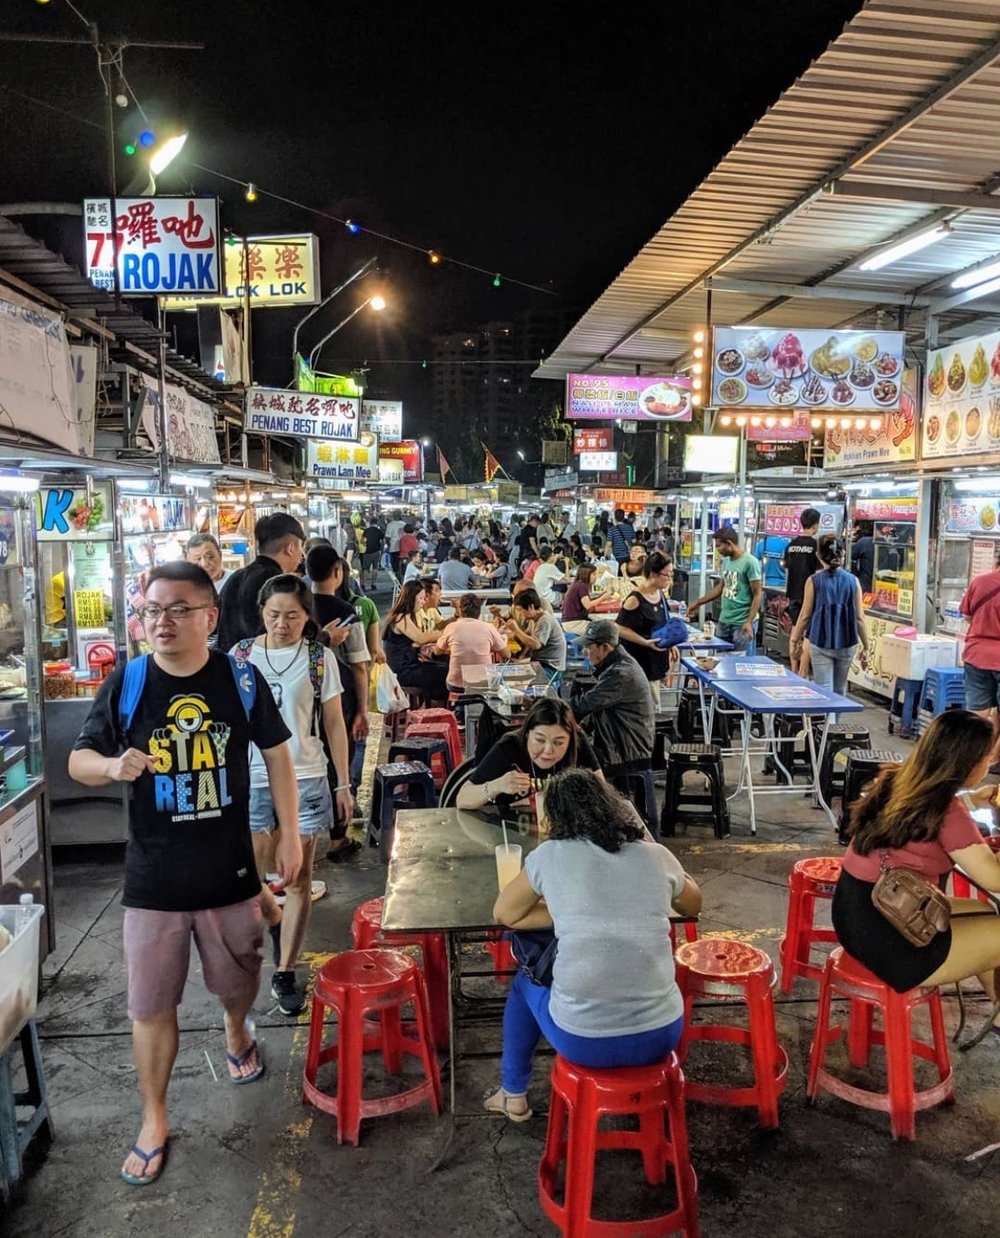 Top 10 Things To Do In Penang At Night: Enjoy Penang’s Vibrant